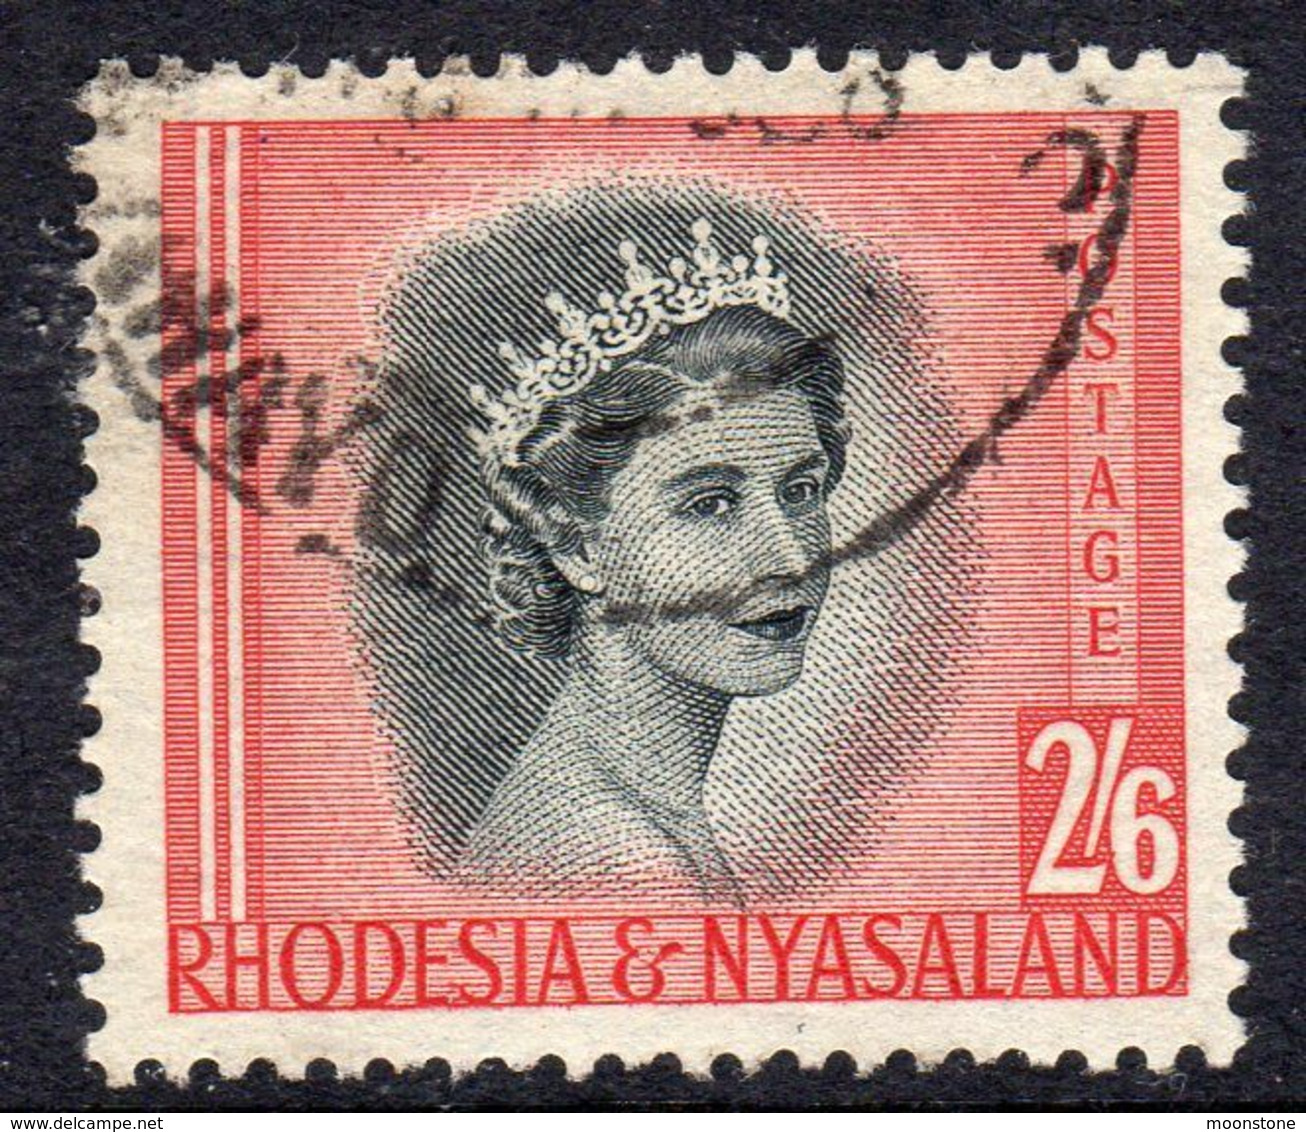 Rhodesia & Nyasaland 1954 Definitives 2/6d Value, Used, SG 12 (BA) - Rhodesia & Nyasaland (1954-1963)